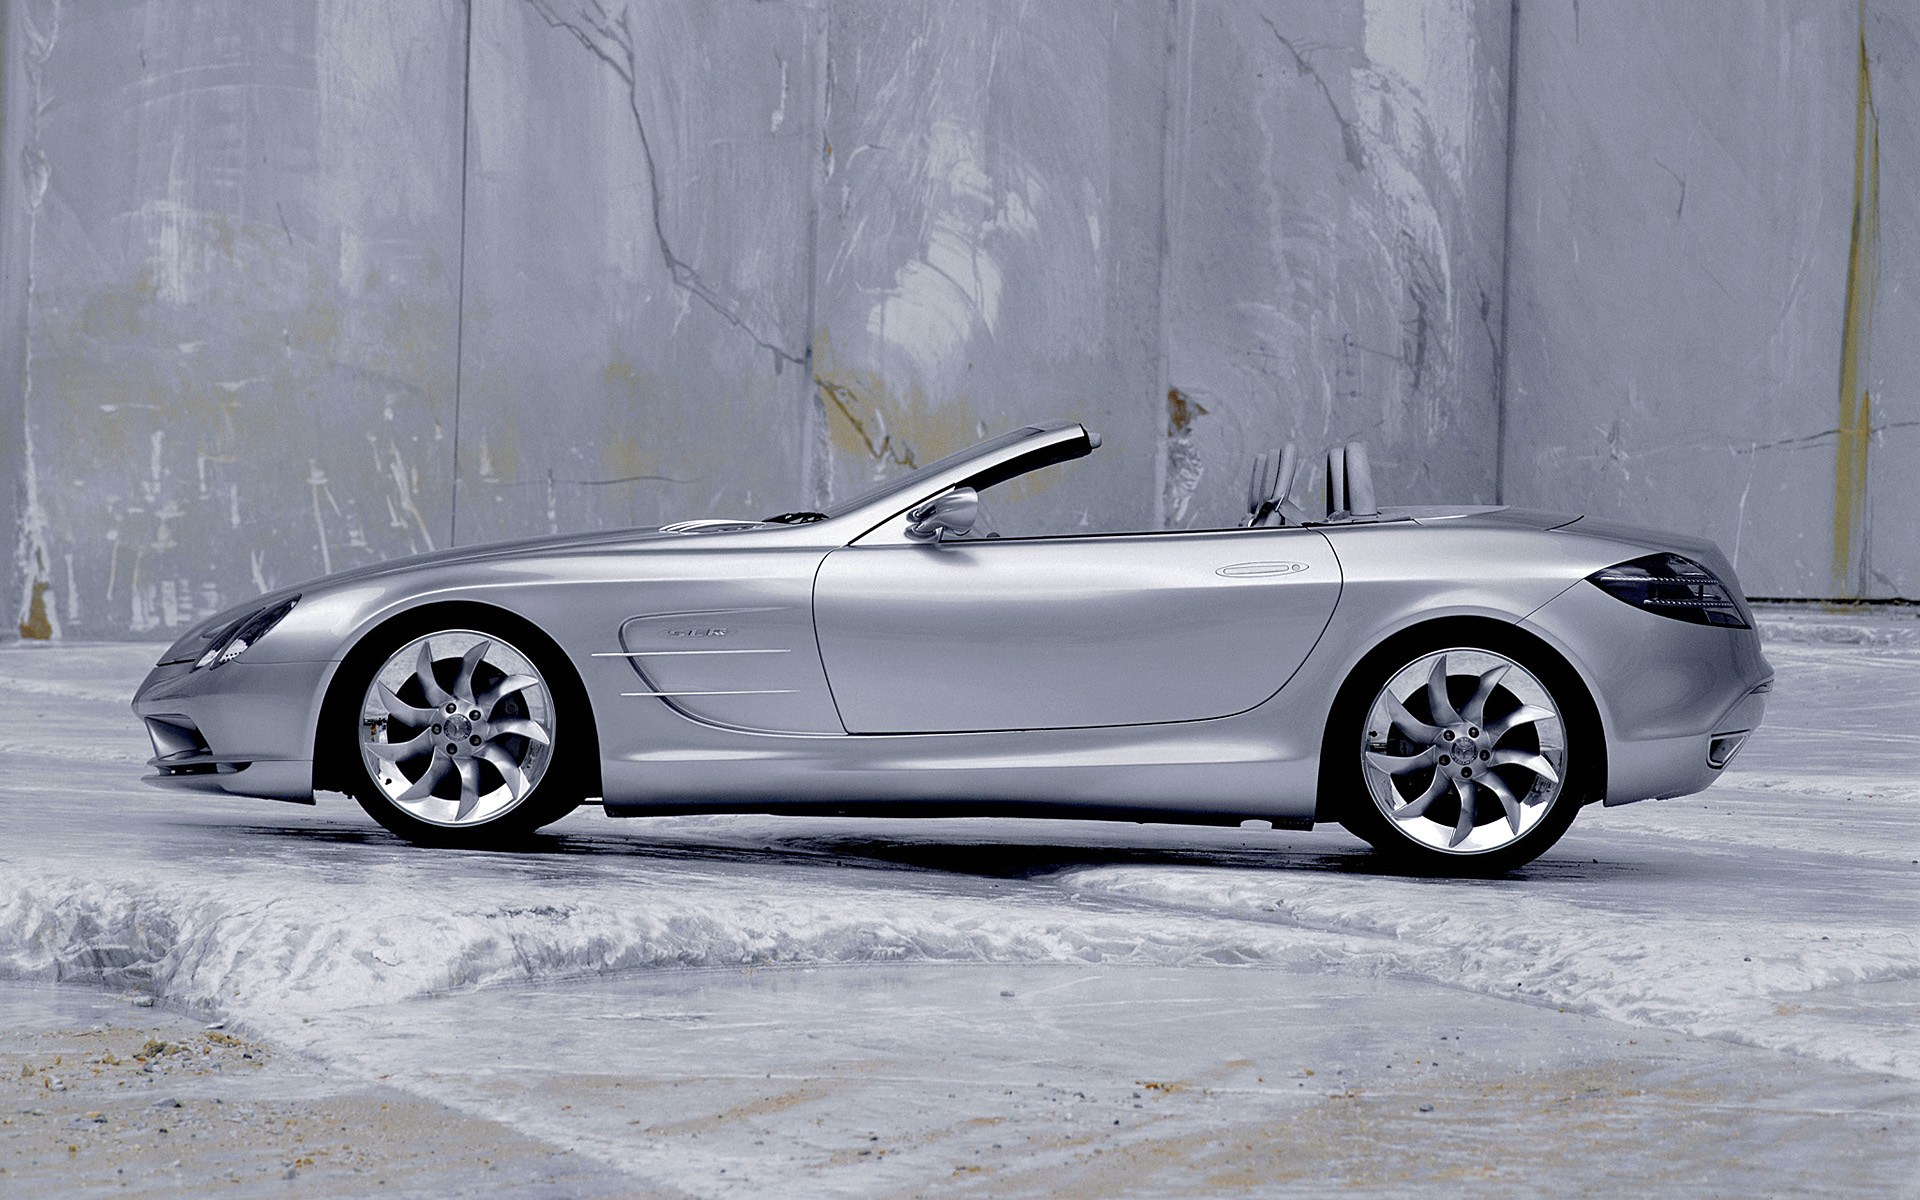  1999 Mercedes-Benz Vision SLR Roadster Concept Wallpaper.